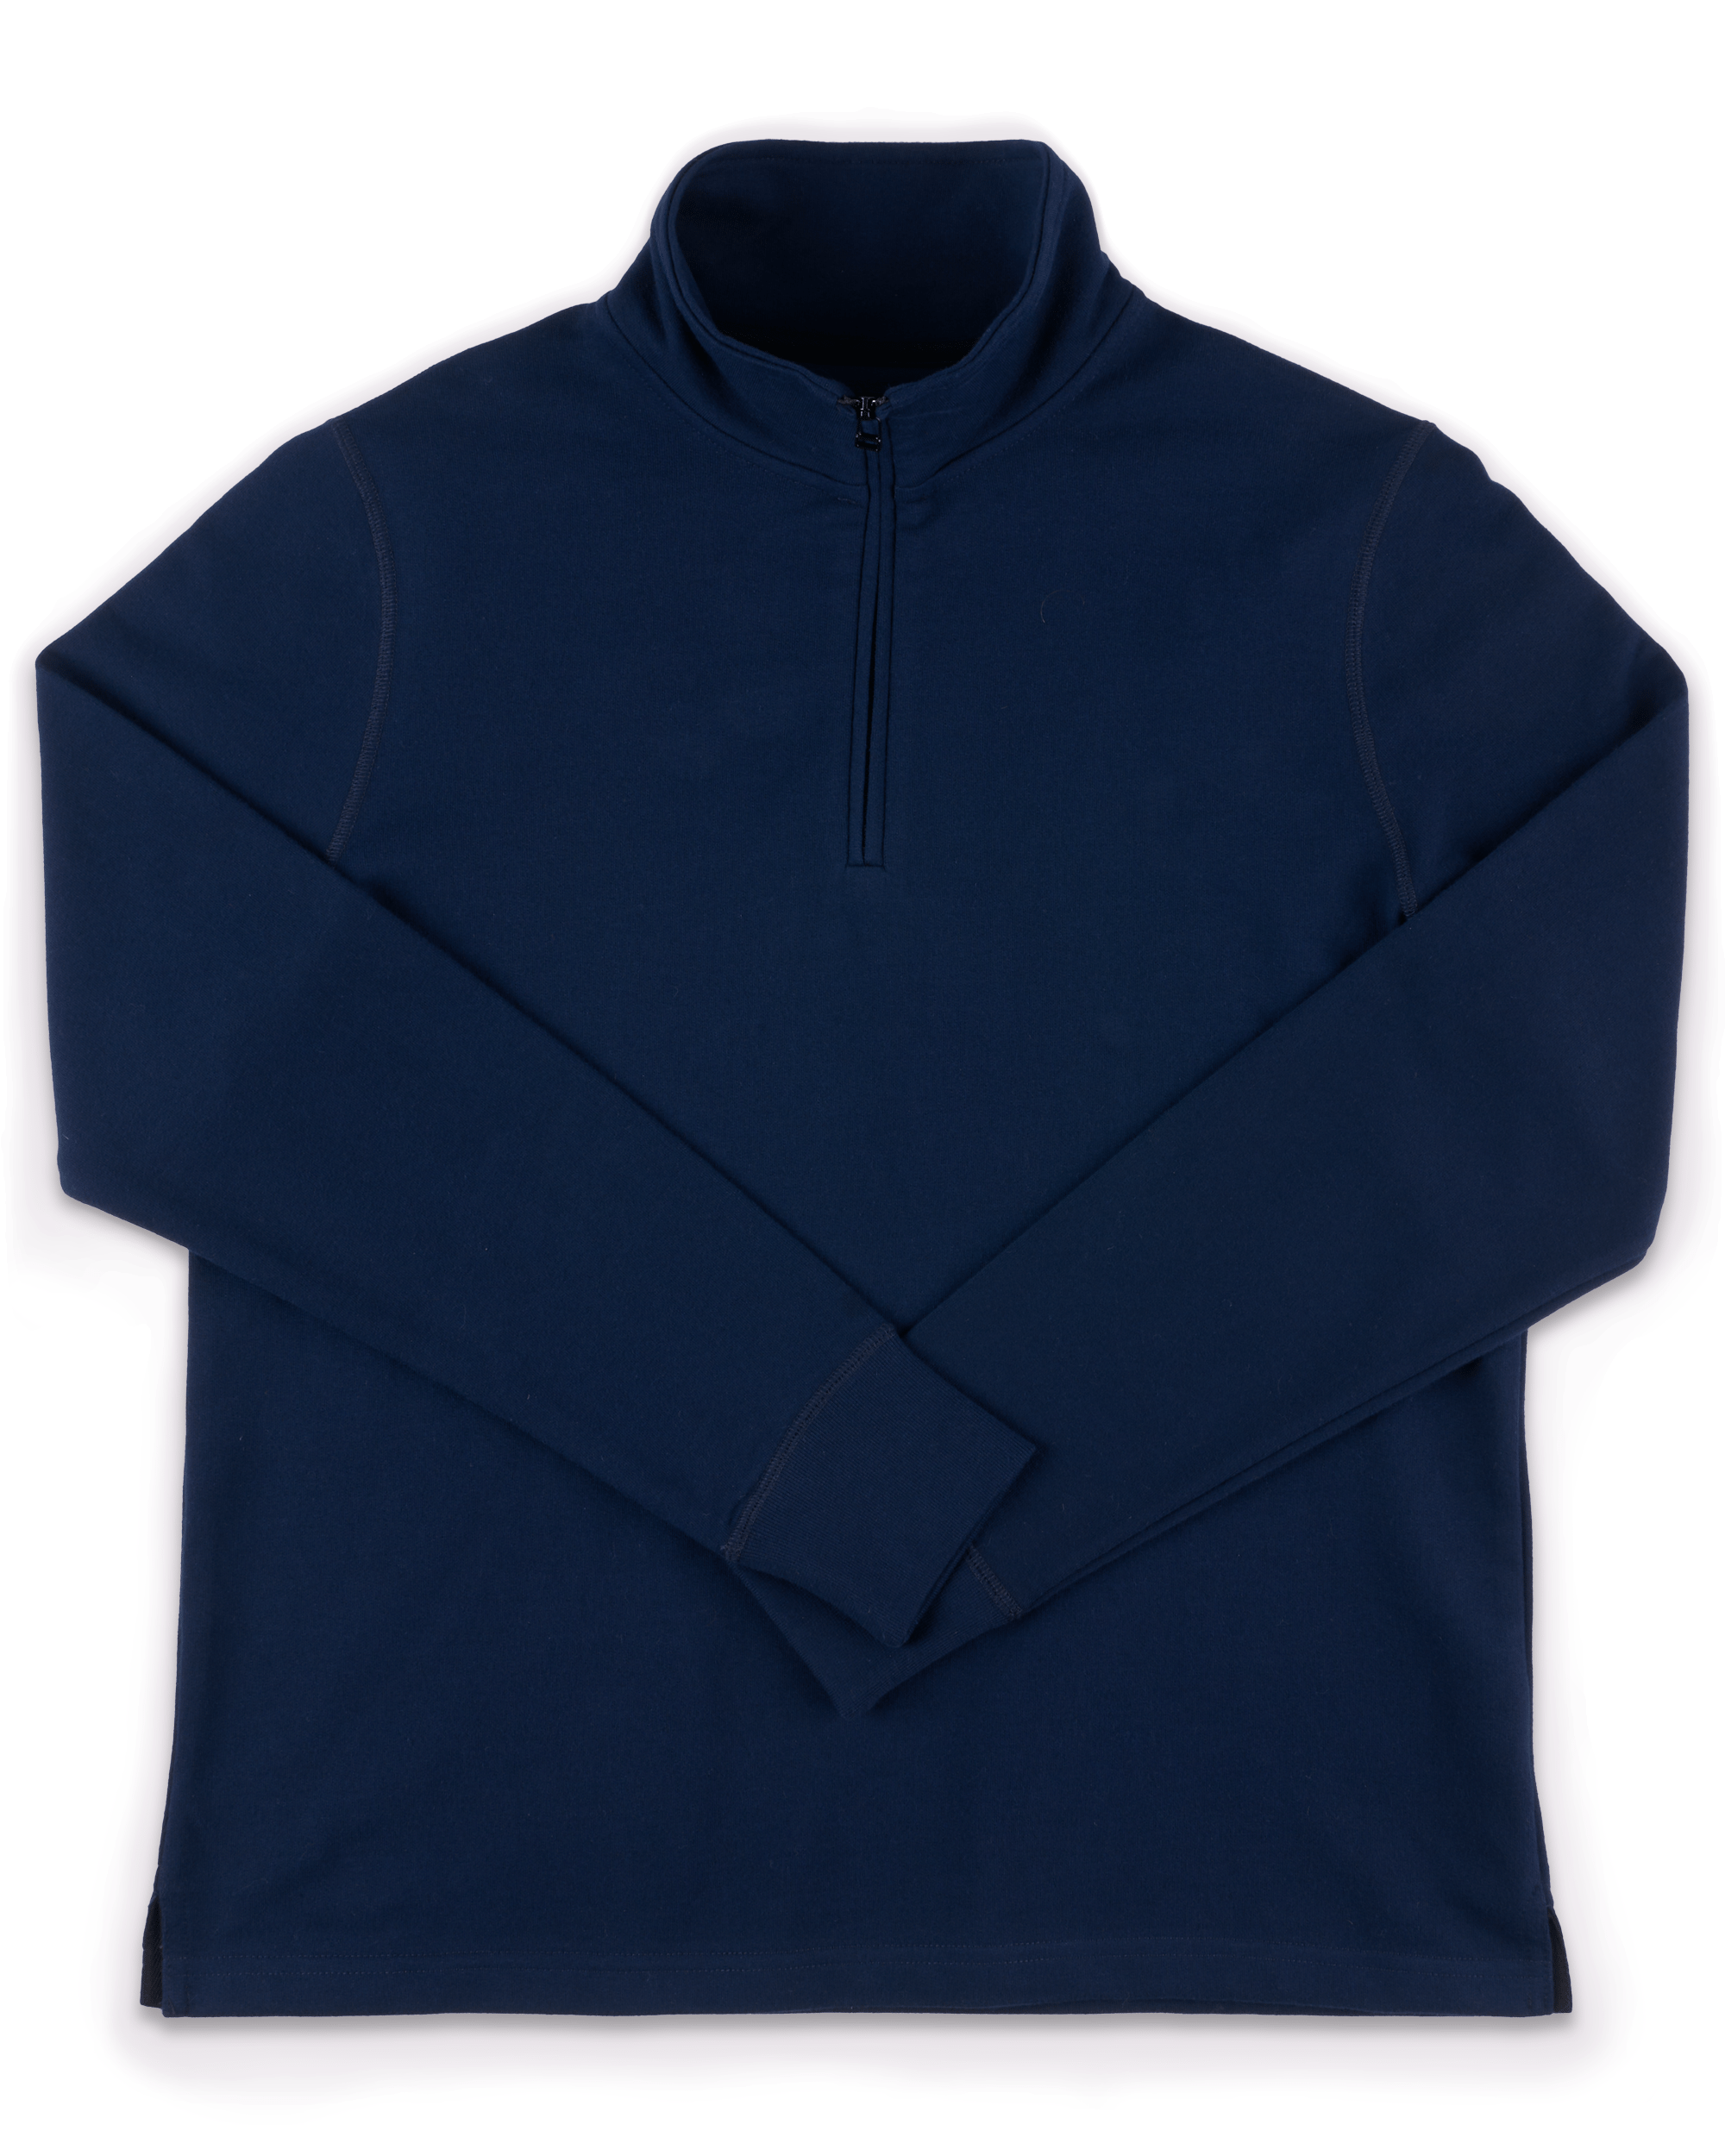 Official University of Cambridge Quarter Zip Sweatshirt – Navy - Ryder &  Amies